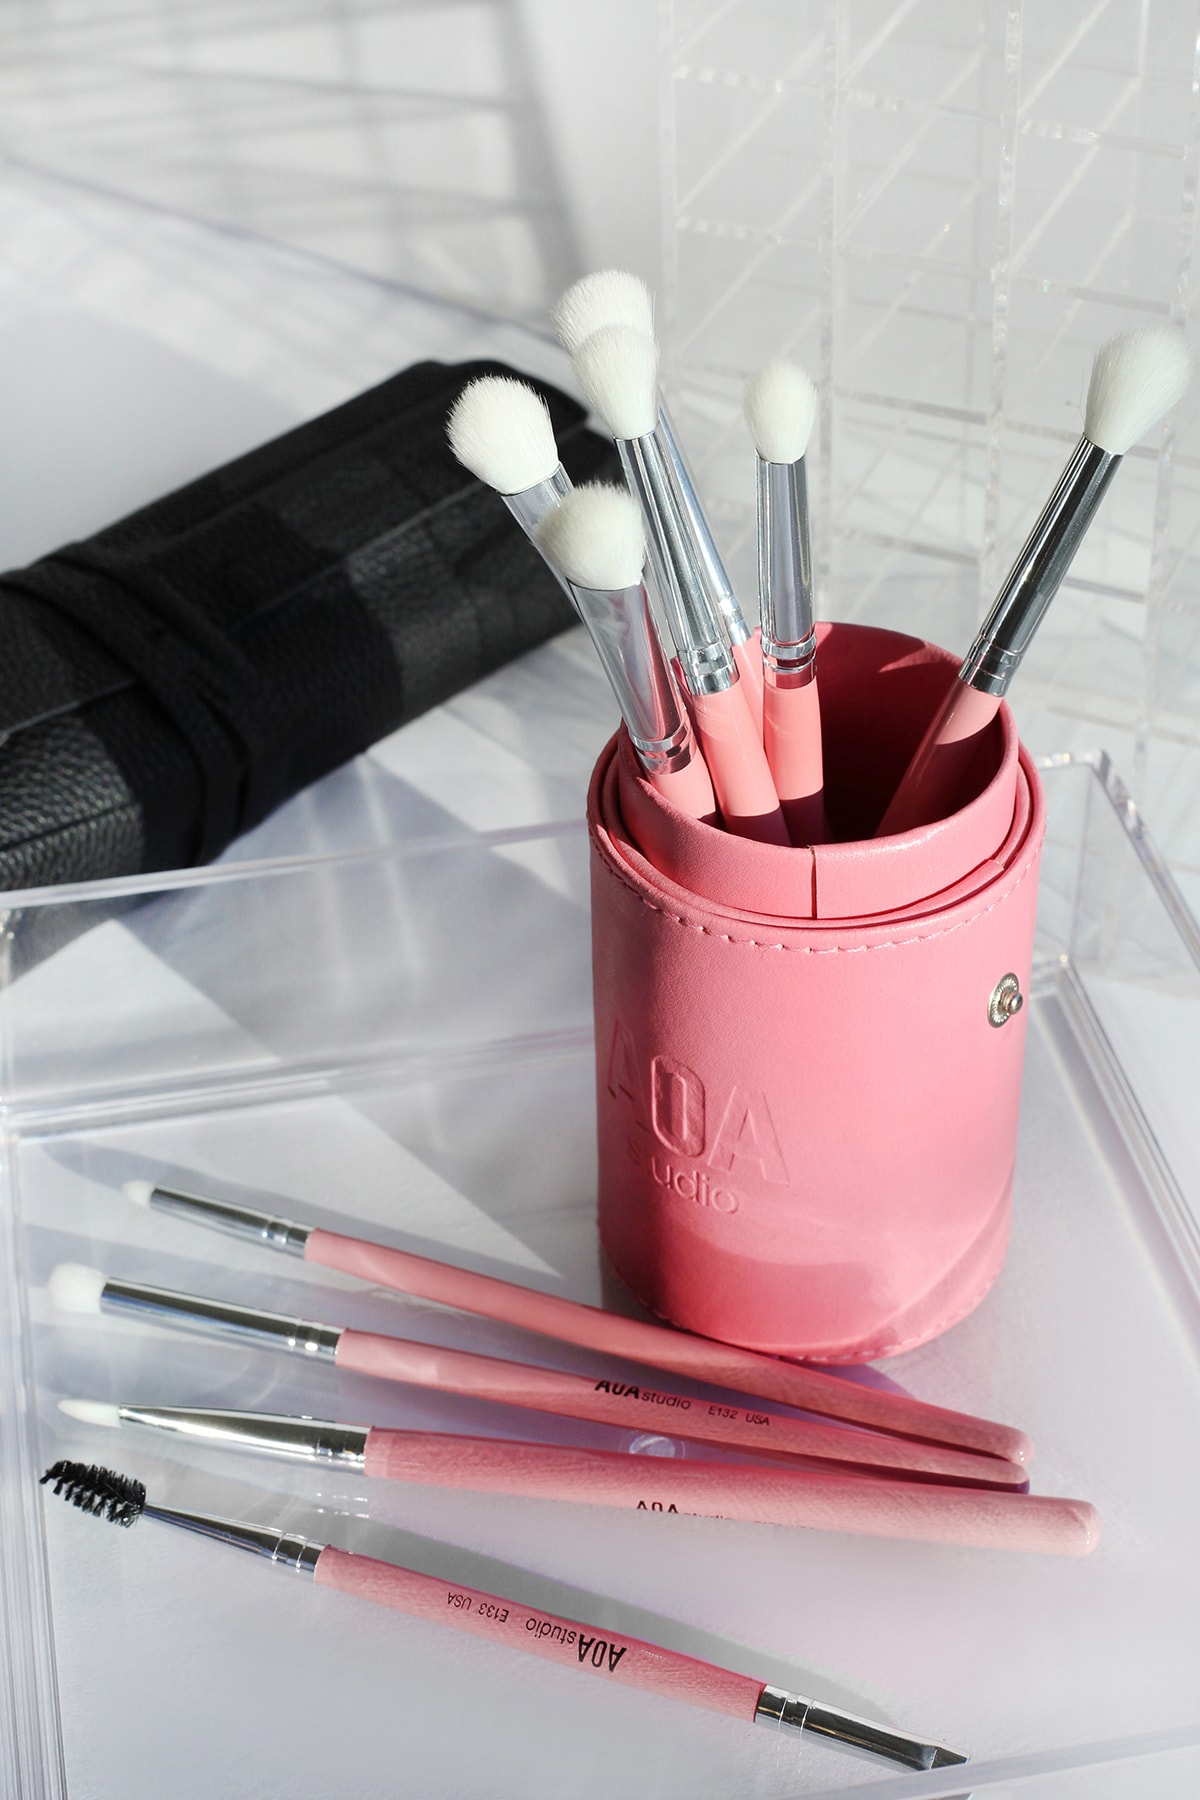 MISS A AOA Millennial Pink Brush Set